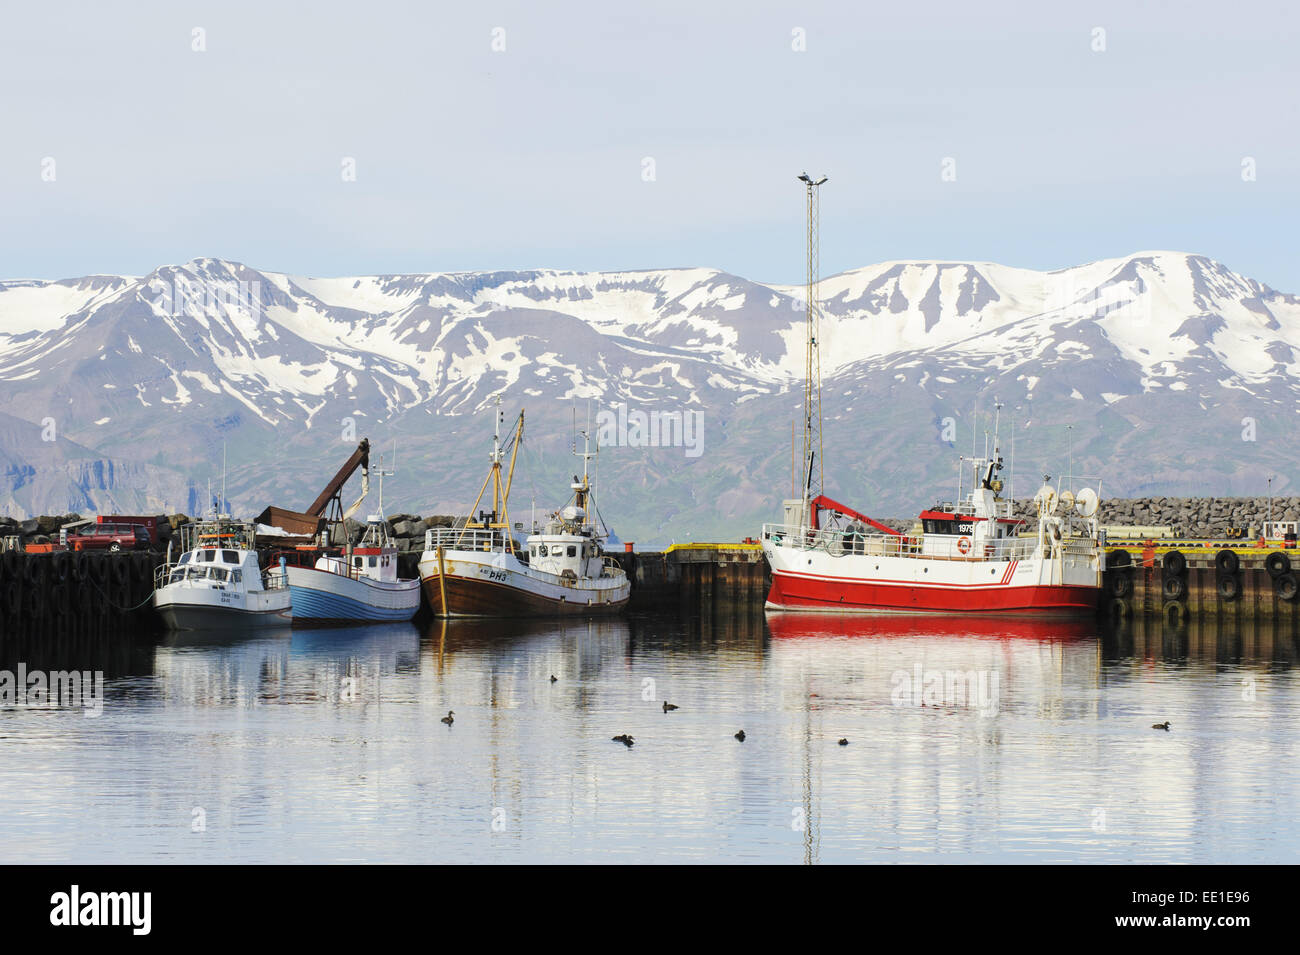 Les bateaux de pêche commerciale et d'Eider à duvet (Somateria mollissima) troupeau dans la région côtière de port, Husavik, Skjalfandi Bay, l'Islande, Juillet Banque D'Images